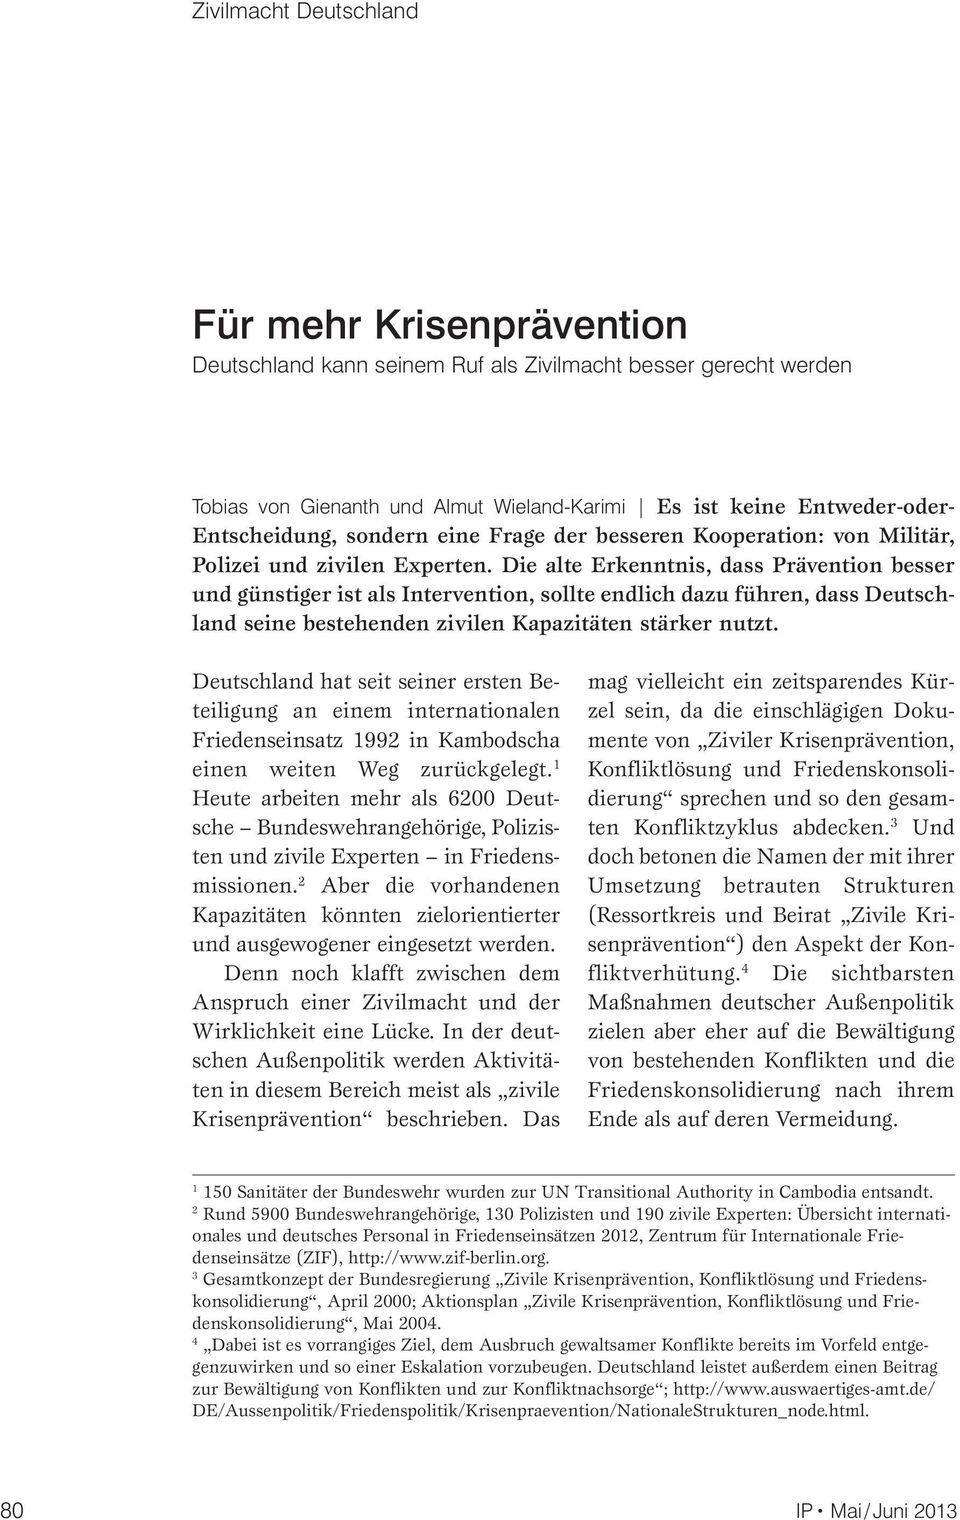 Die alte Erkenntnis, dass Prävention besser und günstiger ist als Intervention, sollte endlich dazu führen, dass Deutschland seine bestehenden zivilen Kapazitäten stärker nutzt.